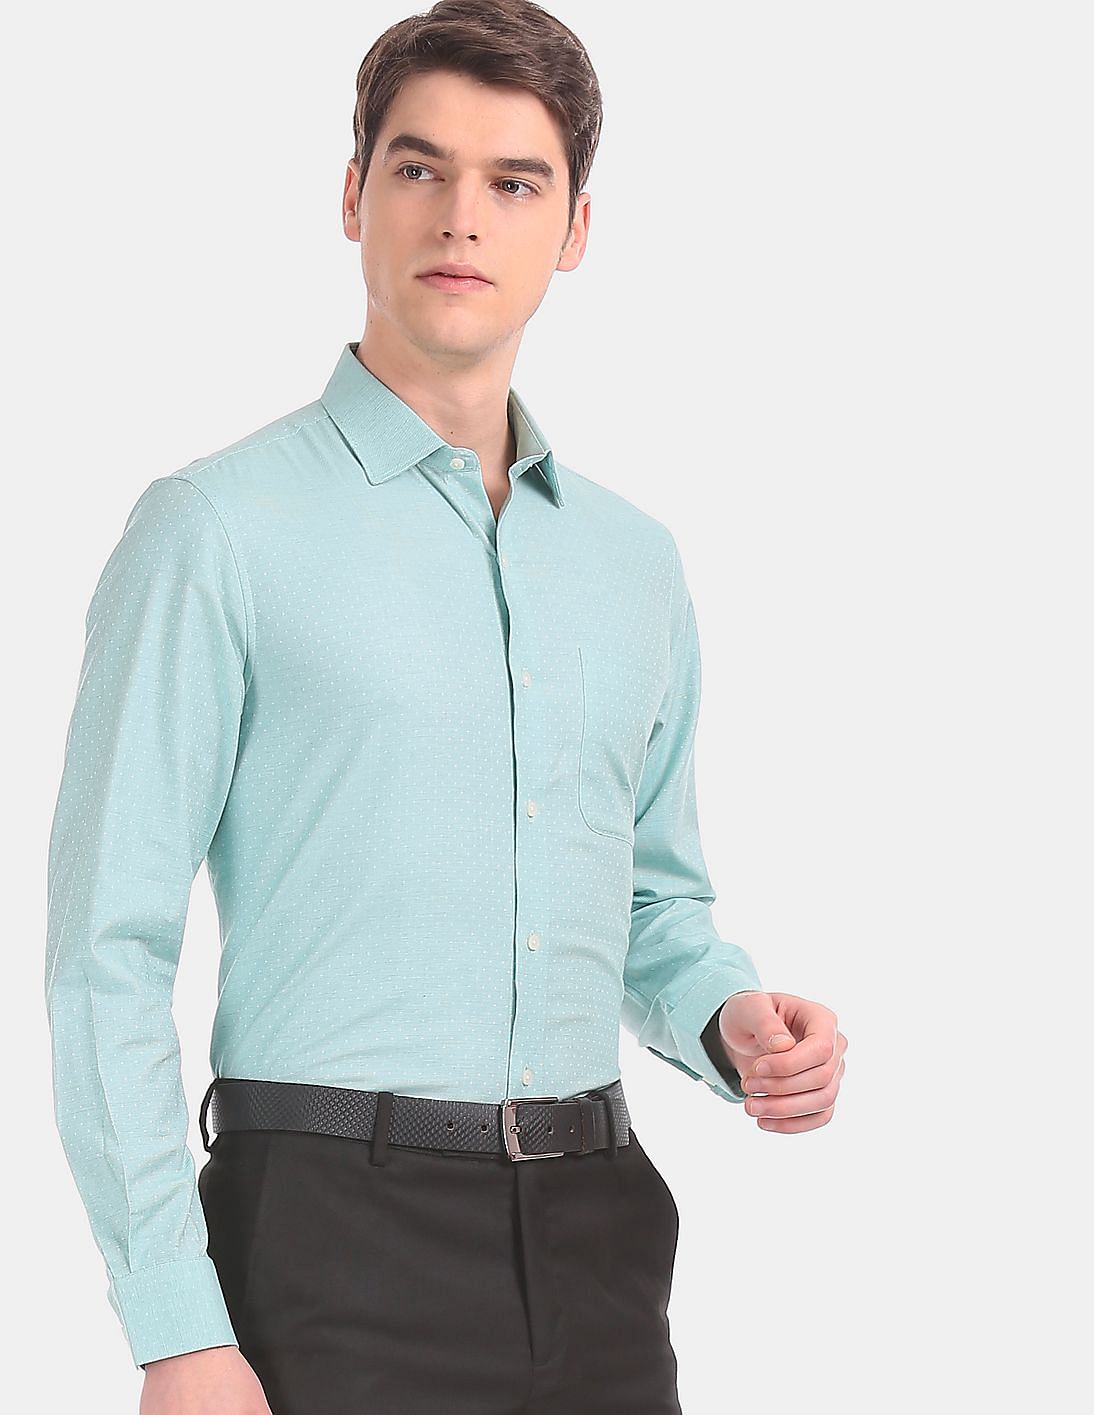 Buy Arvind Men Green Regular Fit Patterned Formal Shirt - NNNOW.com